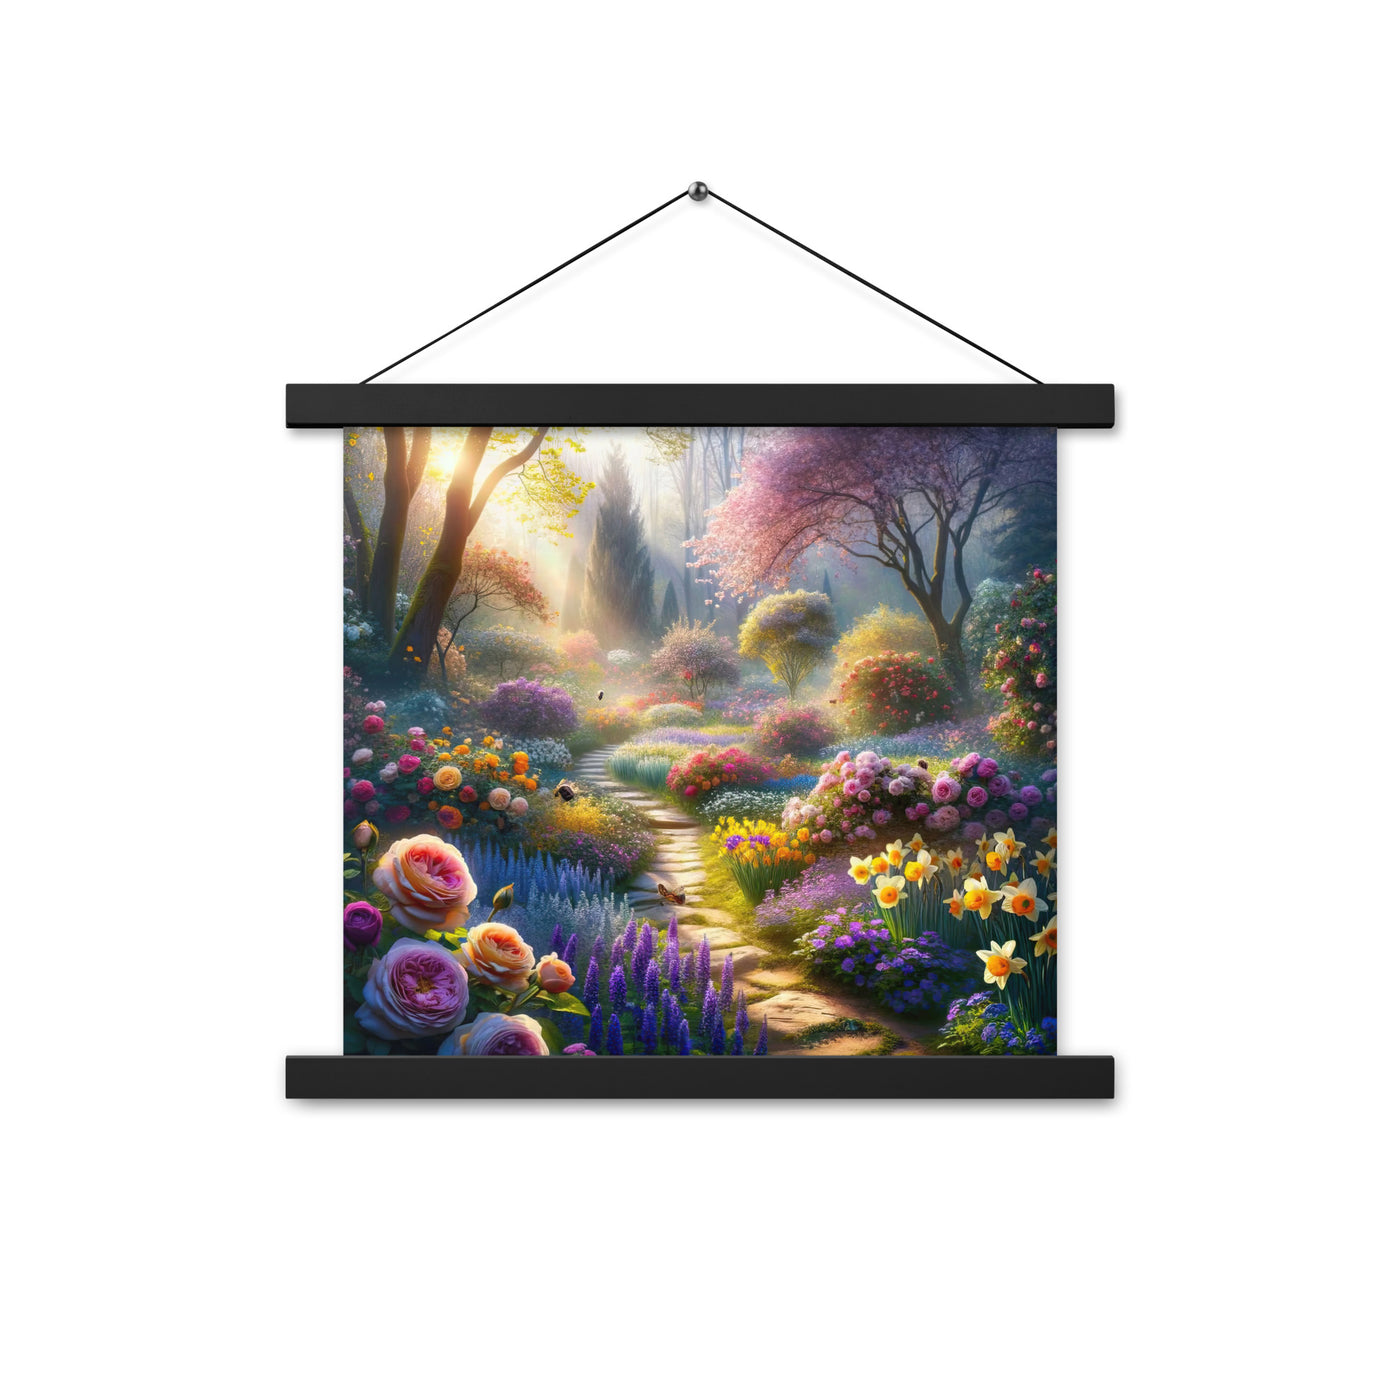 Foto einer Gartenszene im Frühling mit Weg durch blühende Rosen und Veilchen - Premium Poster mit Aufhängung camping xxx yyy zzz 35.6 x 35.6 cm